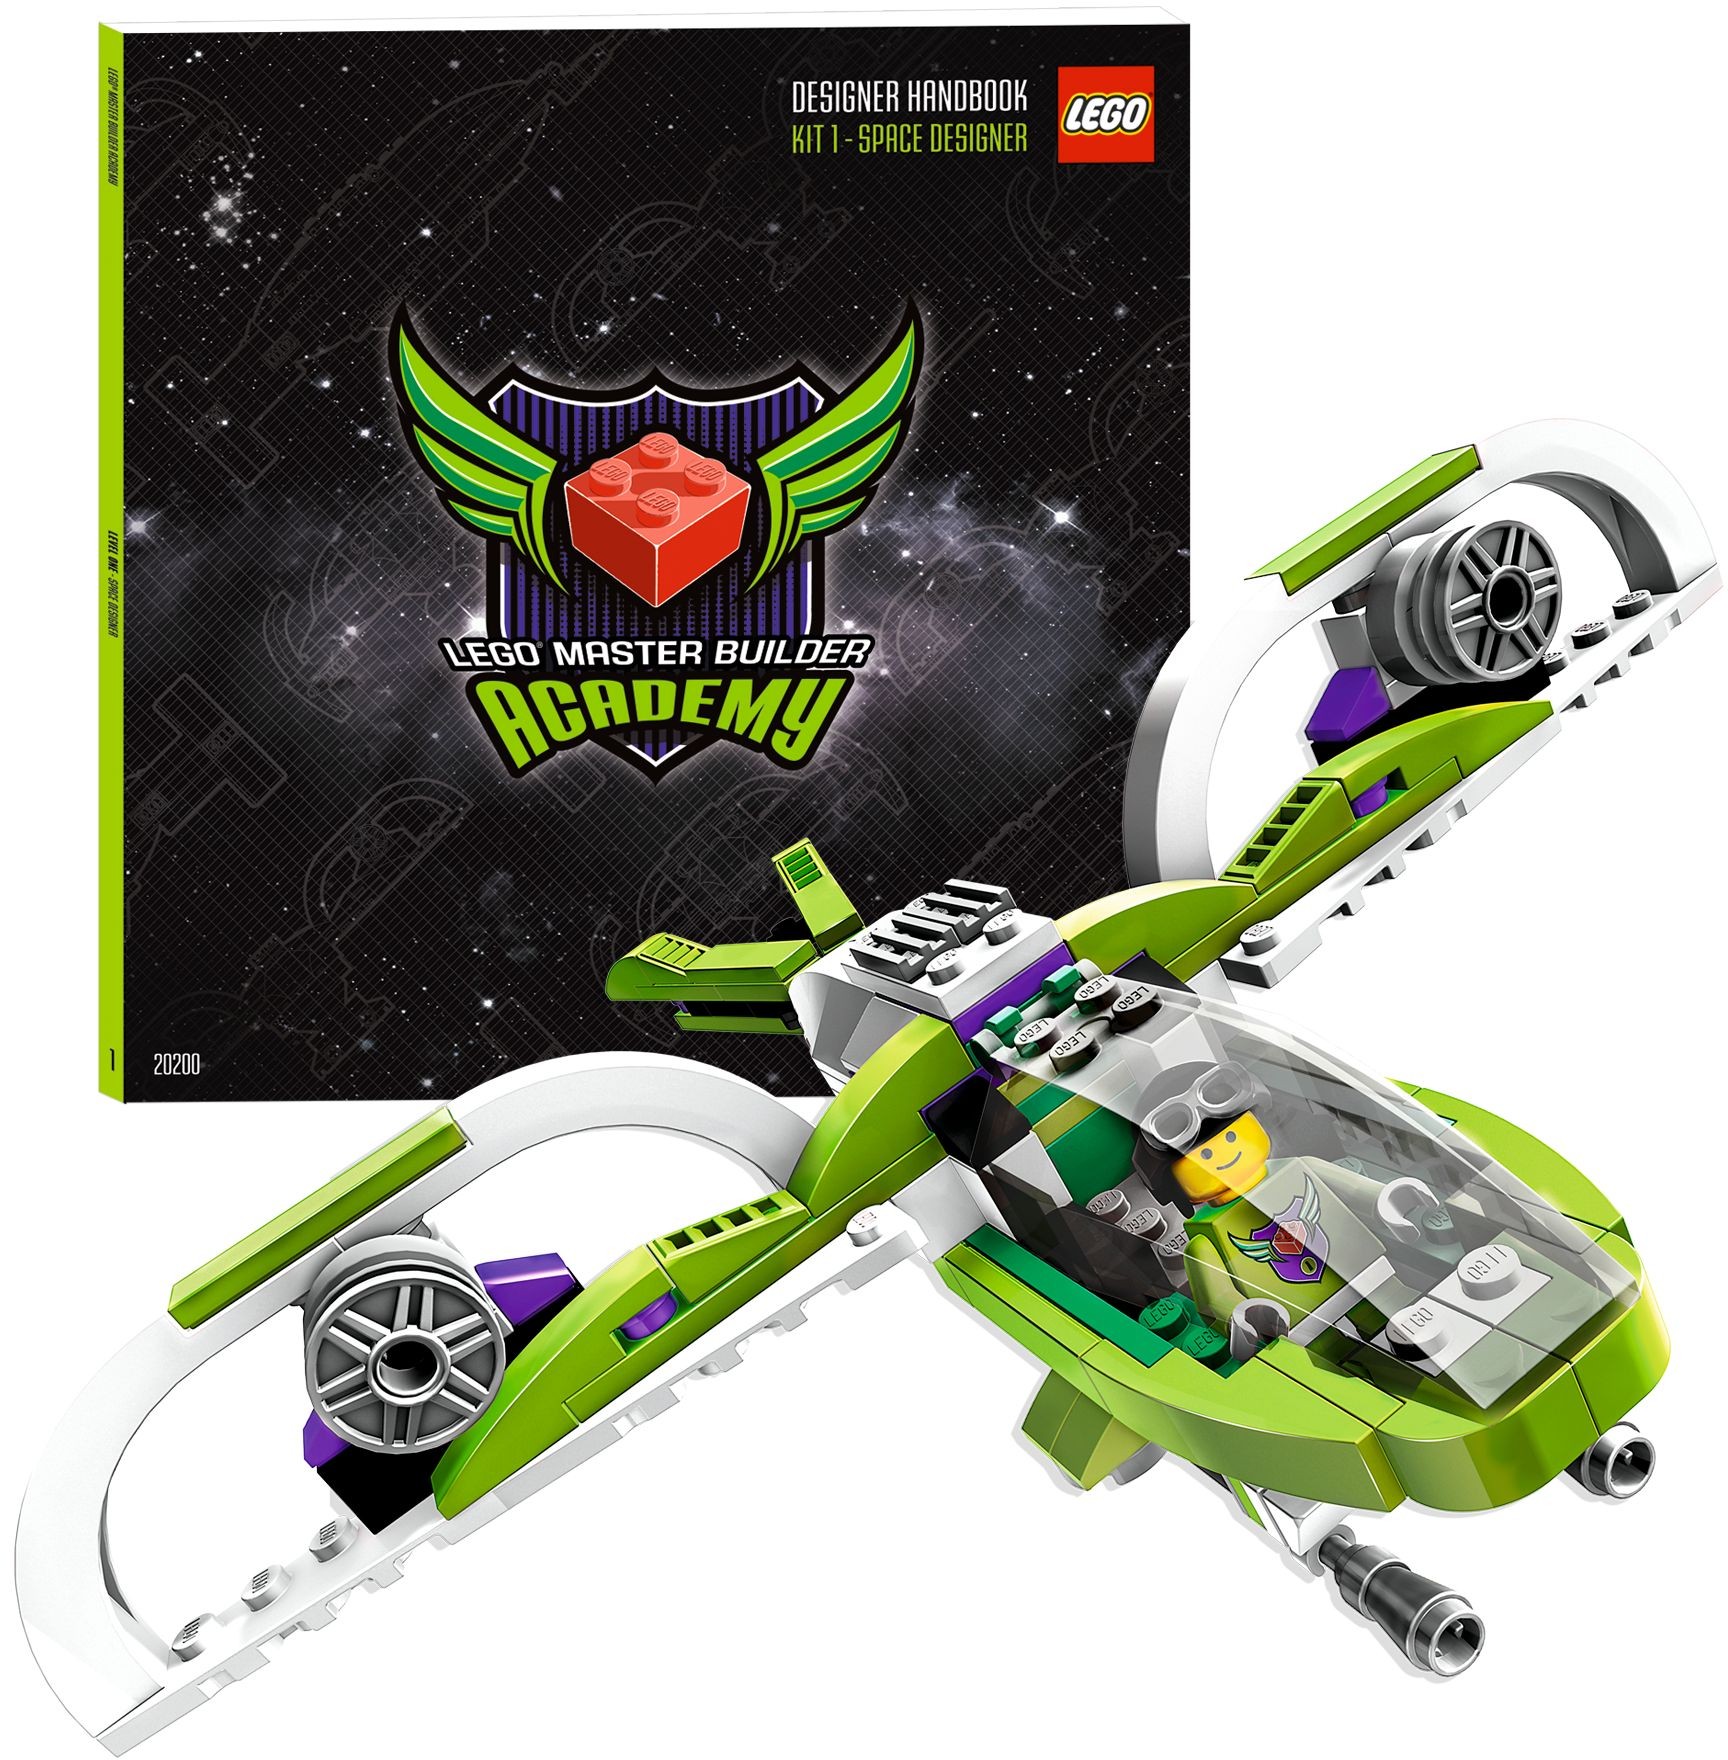 Space Designer (LEGO MBA Kit 1) 20200 | Lego Wiki | FANDOM powered by Wikia1728 x 1760